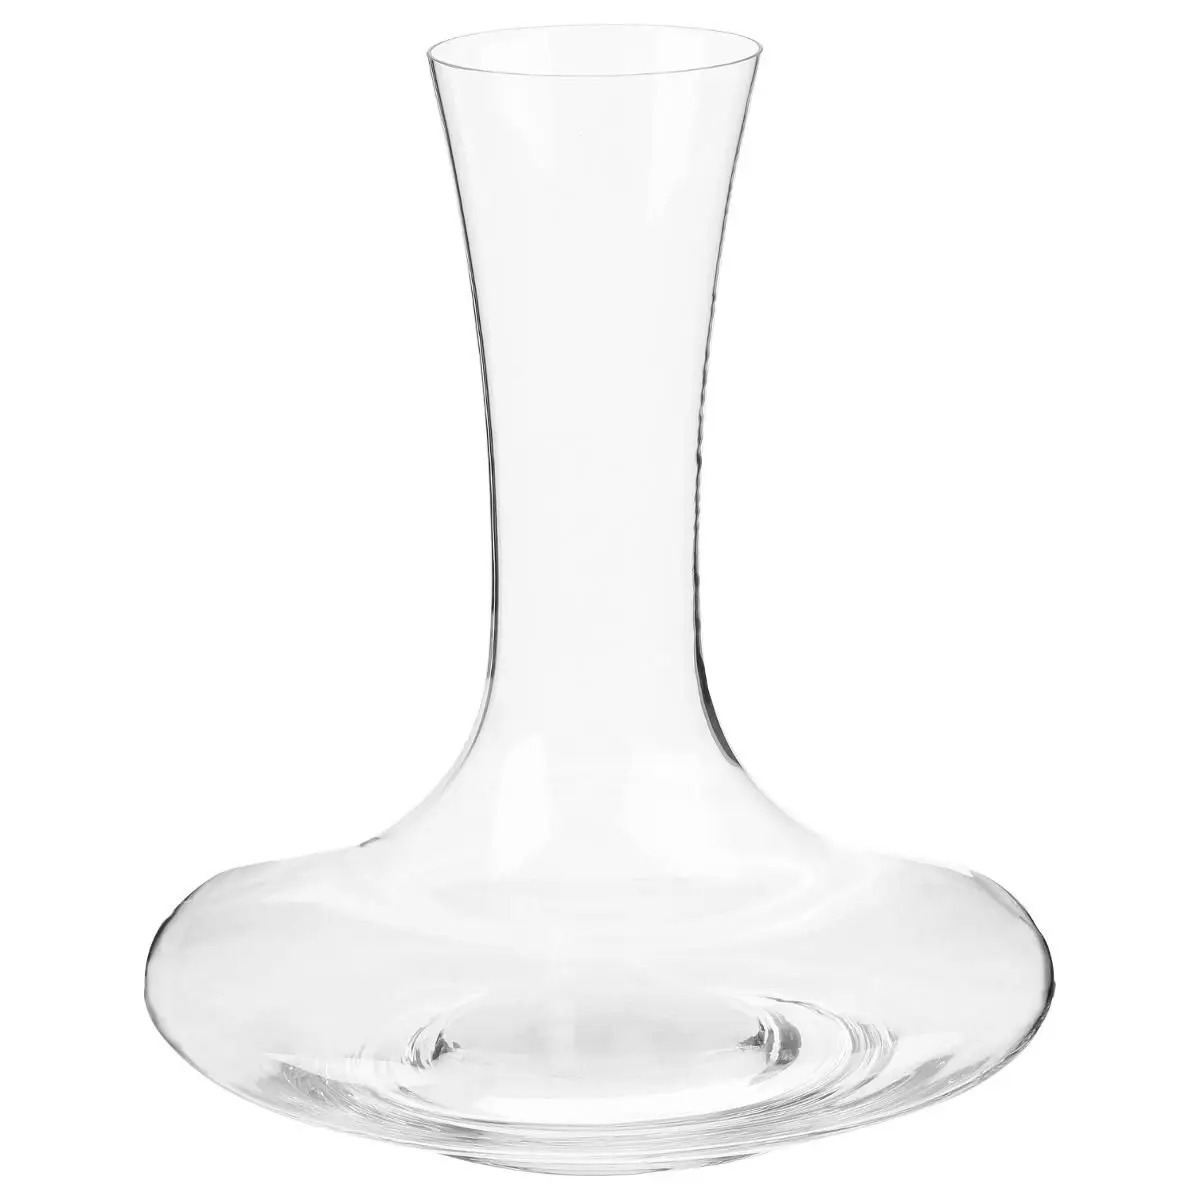 Wijn karaf-decanteer kan 1,5 liter van glas met taps toelopende hals